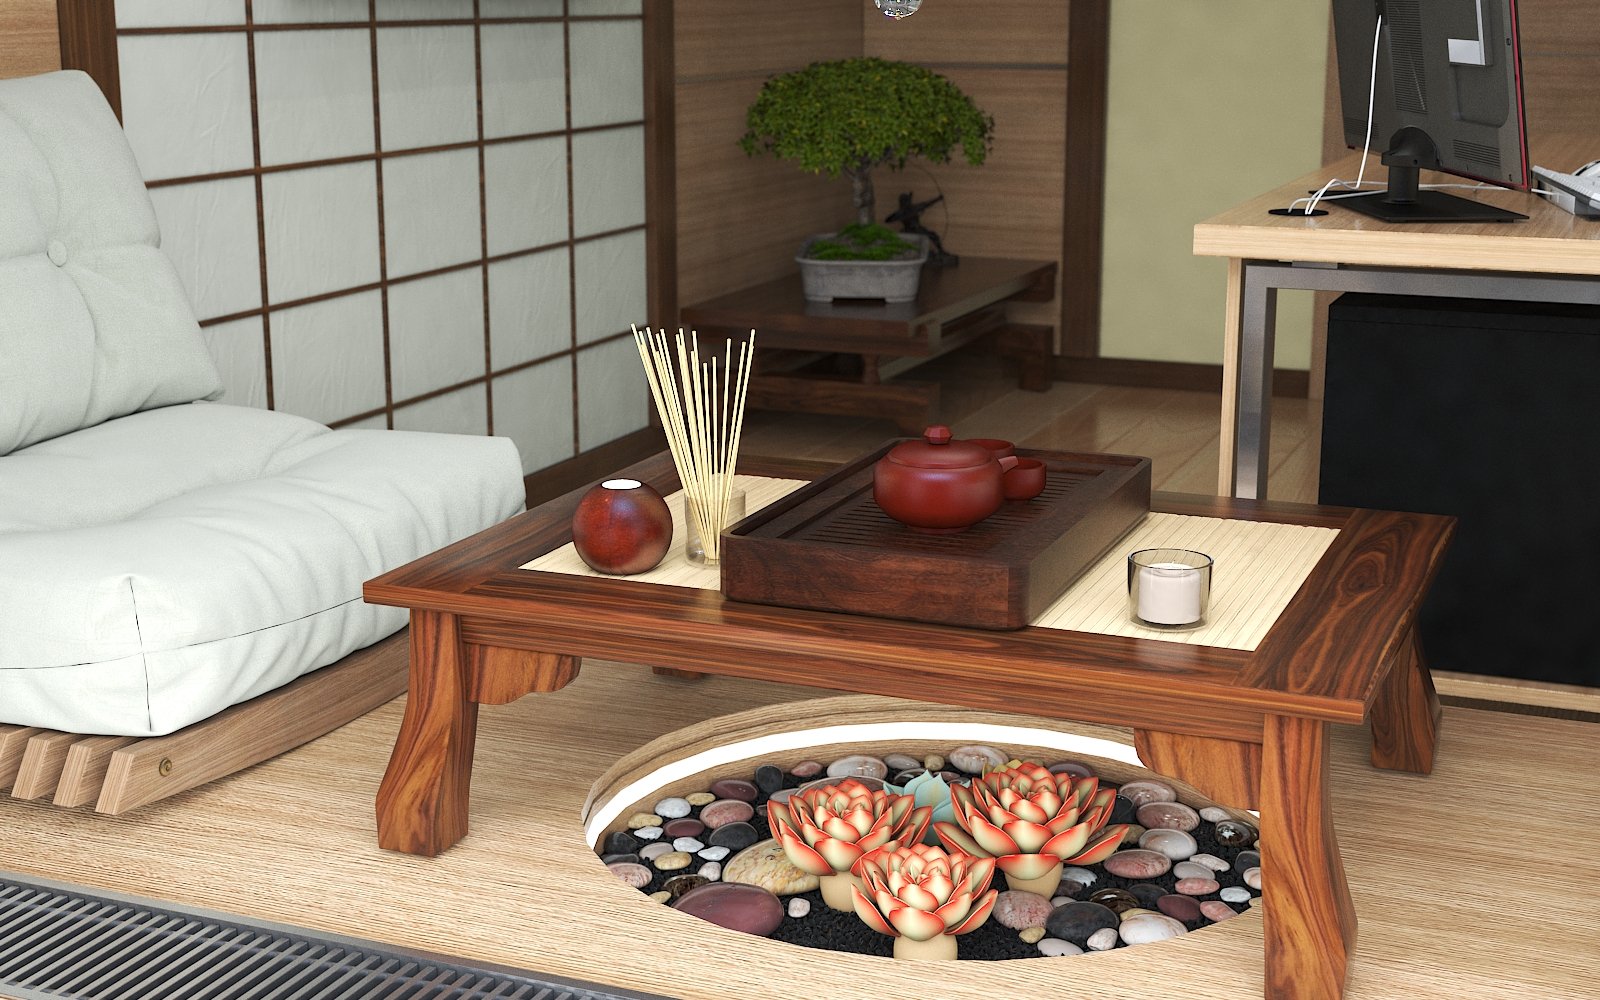 Забронировать столик в японском саду. Столик в японском стиле. Японский столик для чаепития. Японская мебель. Журнальный столик в японском стиле.